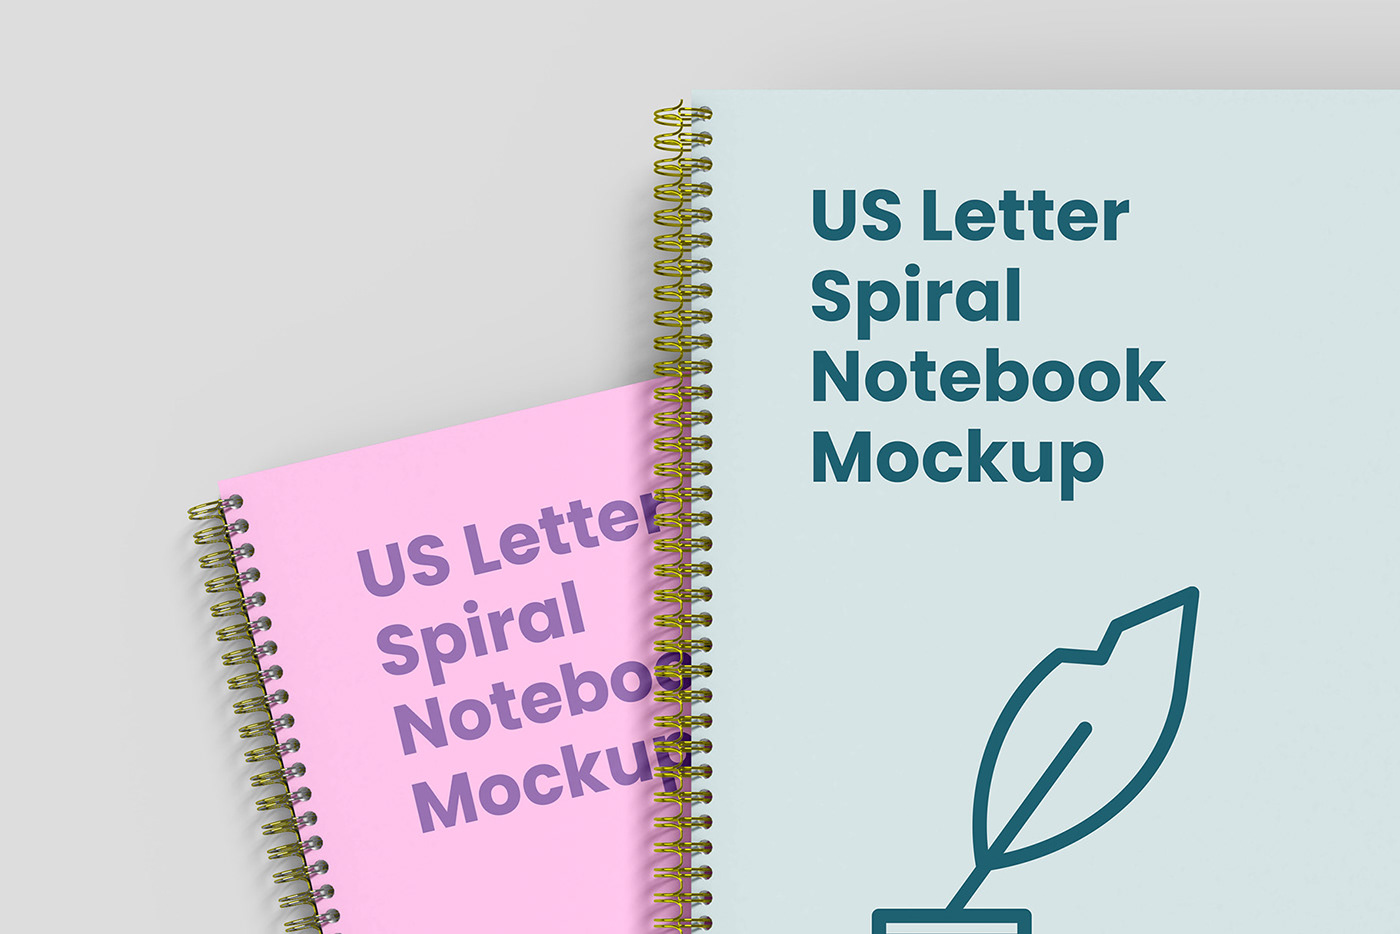 book cover mockup Mockup Note book notebook page pocketbook publication Spiral us letter